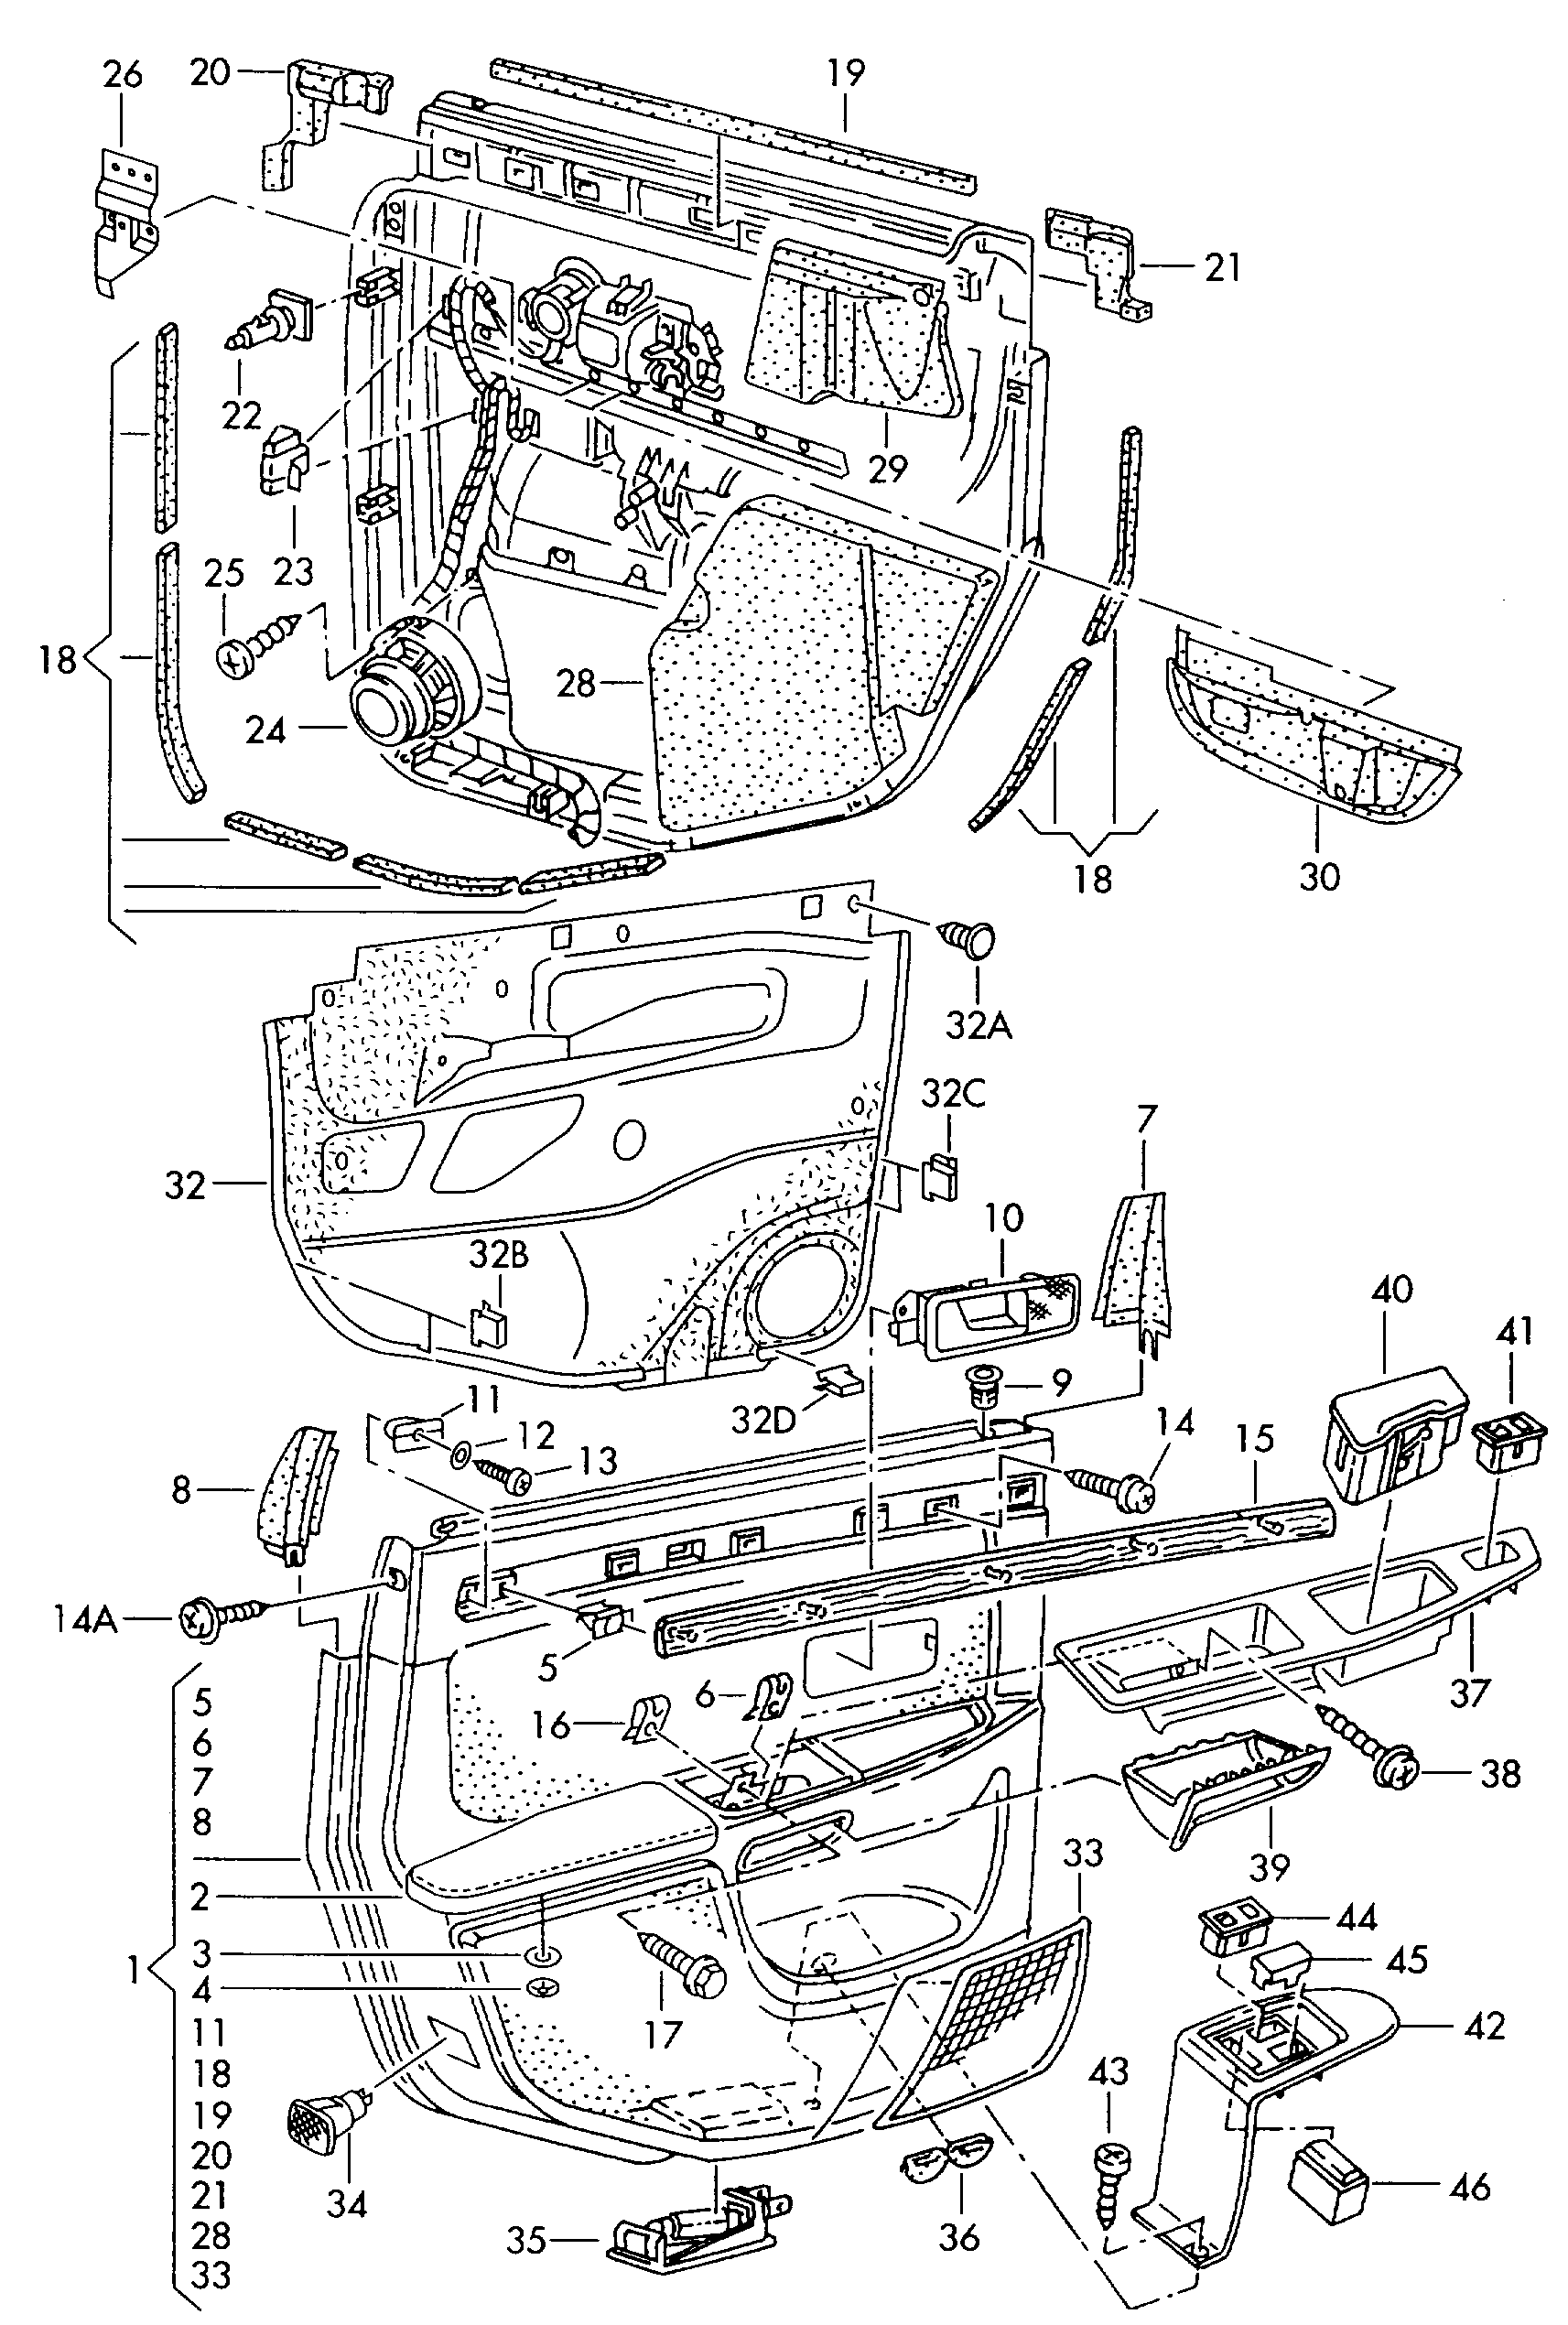 Individual partsdoor trim panels rear - Audi A8 - a8